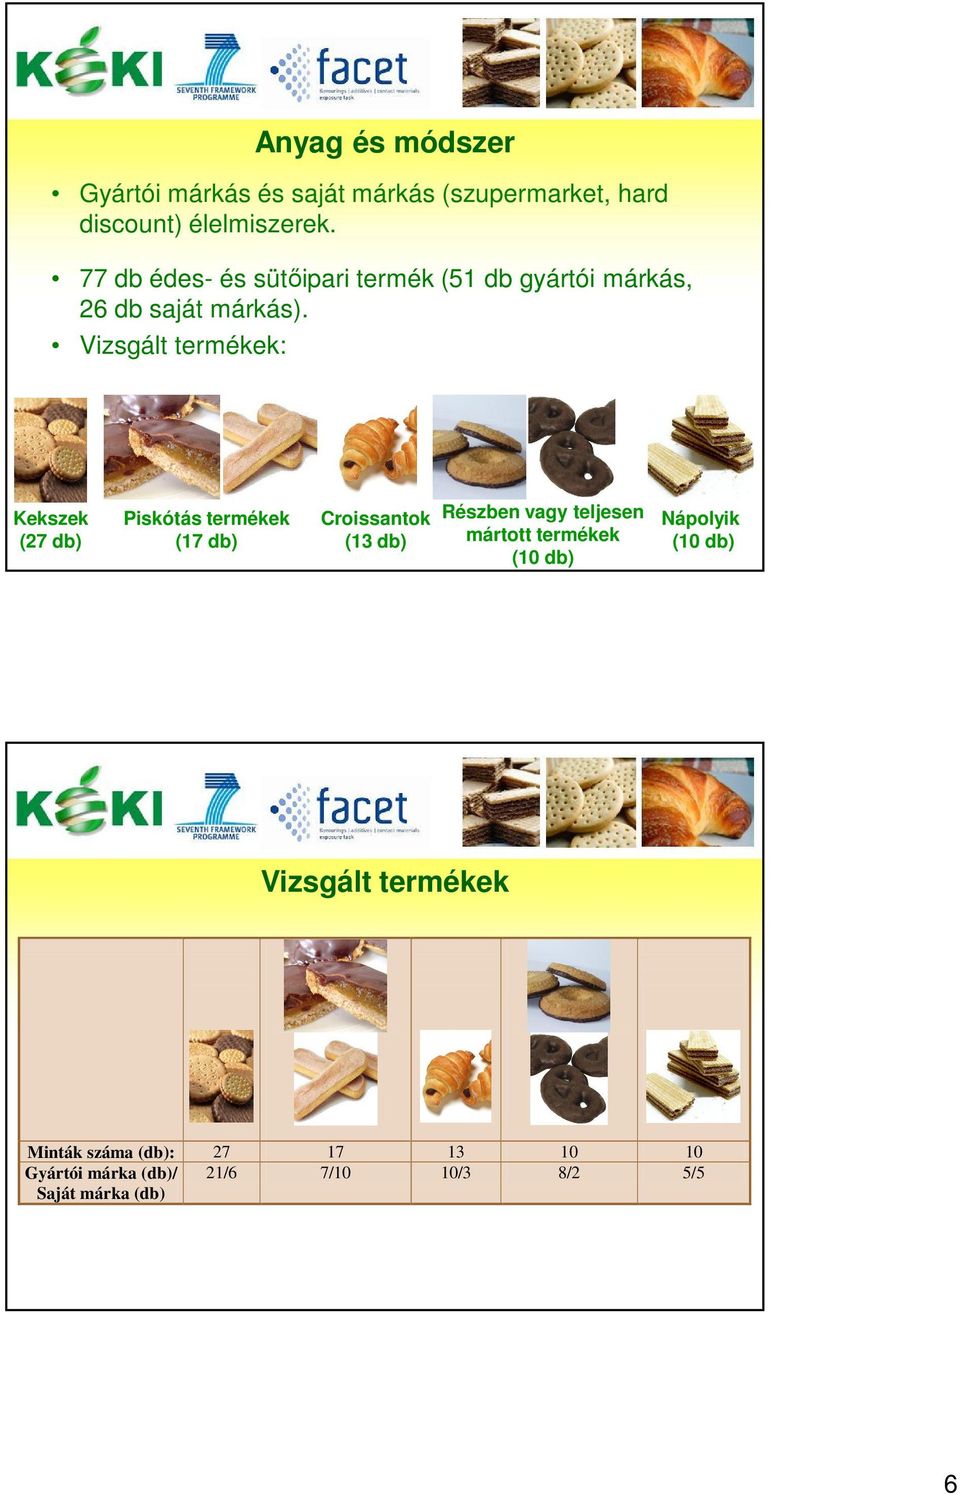 Vizsgált termékek: Kekszek (7 db) Piskótás termékek (17 db) Croissantok ( db) Részben vagy teljesen